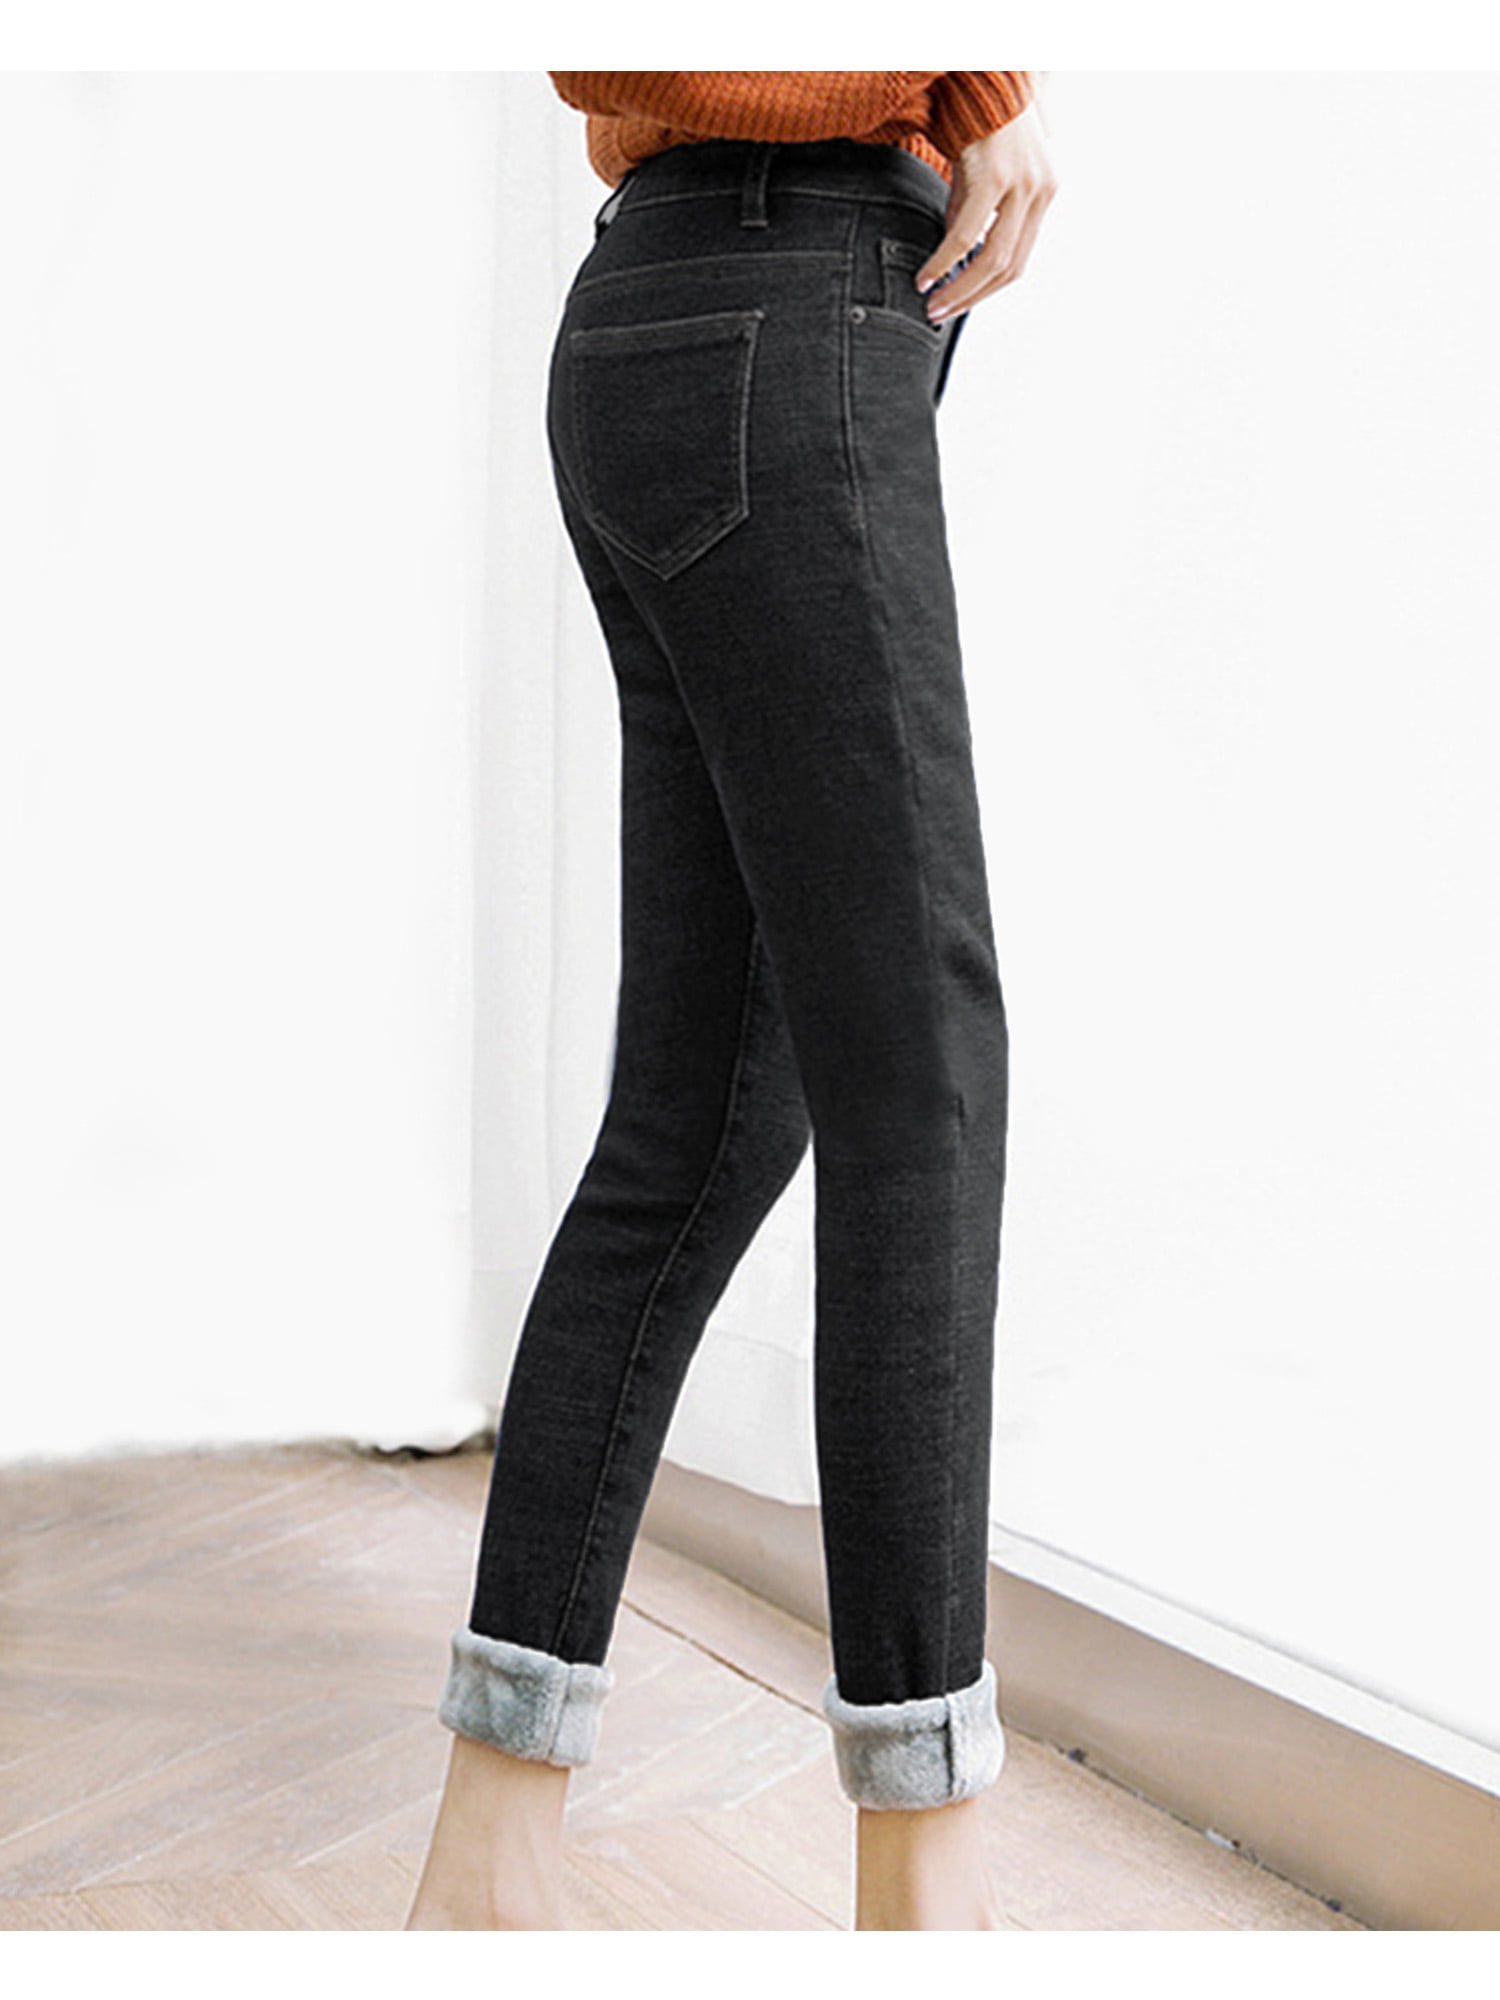 Listenwind Womens Warm Fleece Lined Jeans Stretch Skinny Winter